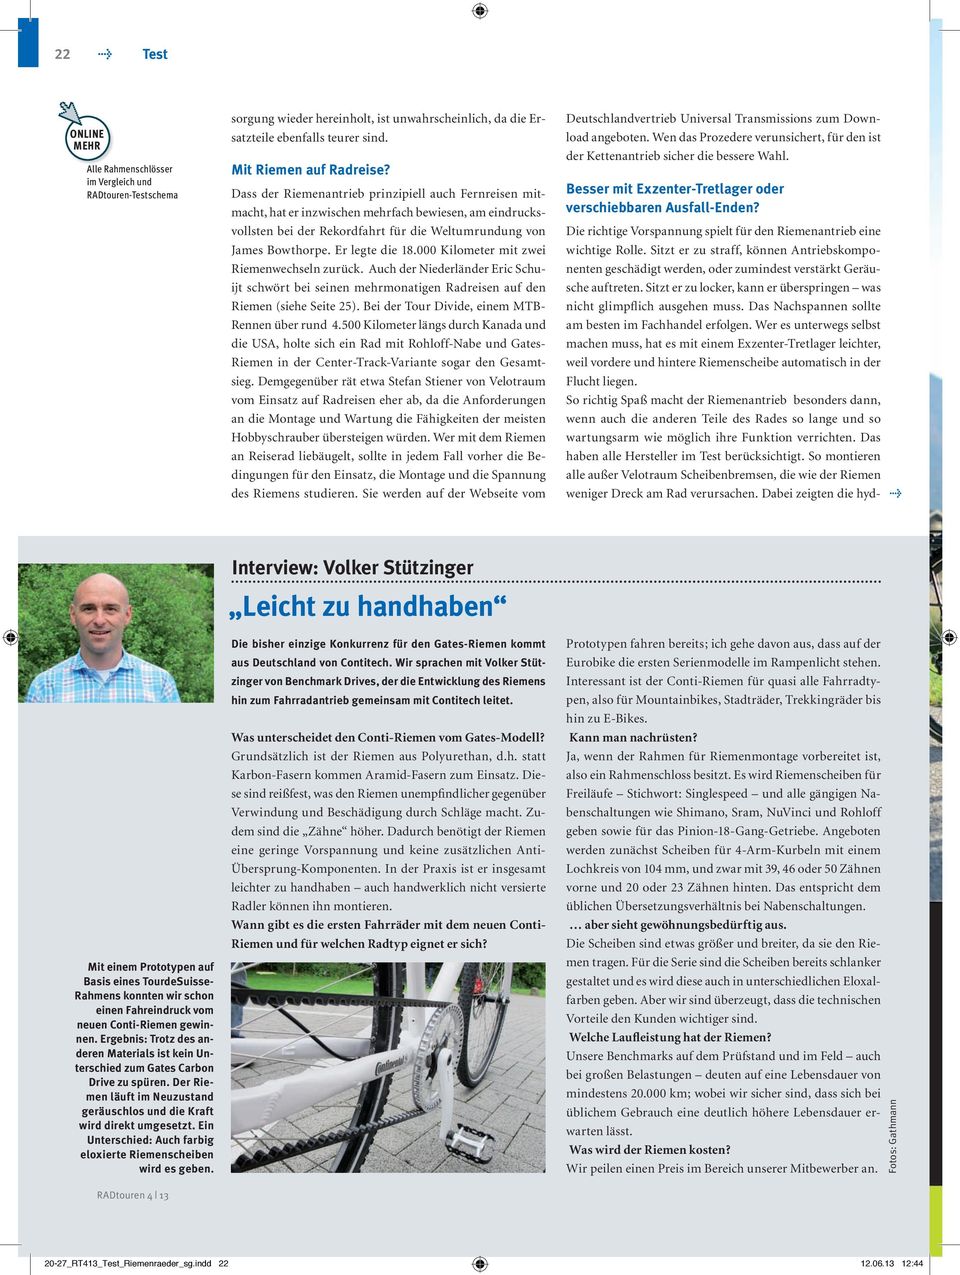 000 Kilometer mit zwei Riemenwechseln zurück. Auch der Niederländer Eric Schuijt schwört bei seinen mehrmonatigen Radreisen auf den Riemen (siehe Seite 25).